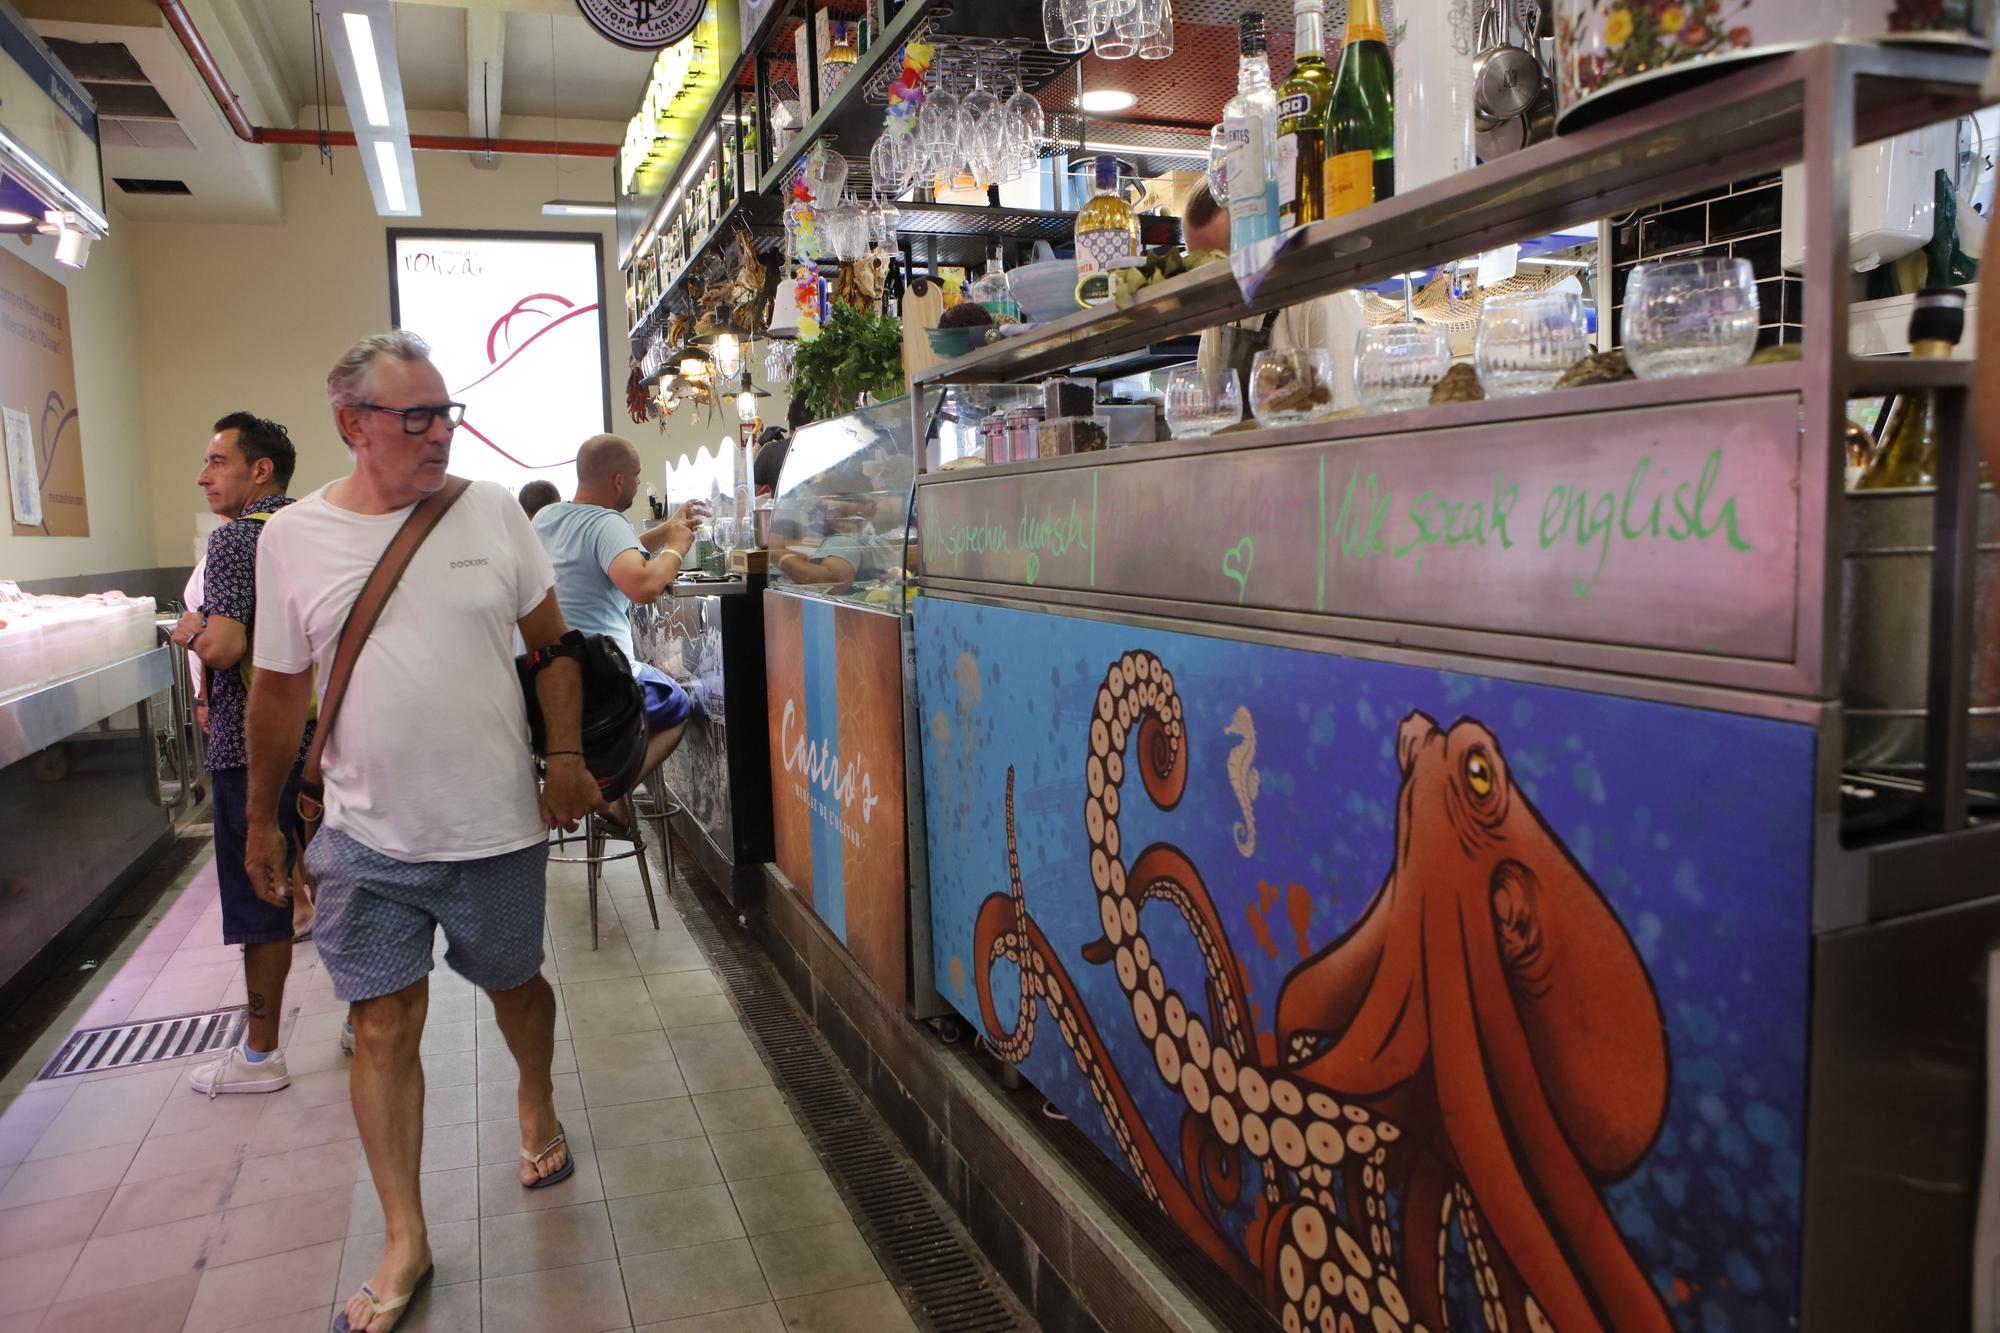 So sehen die Bars in der Fischhalle des Mercat de l'Olivar aus